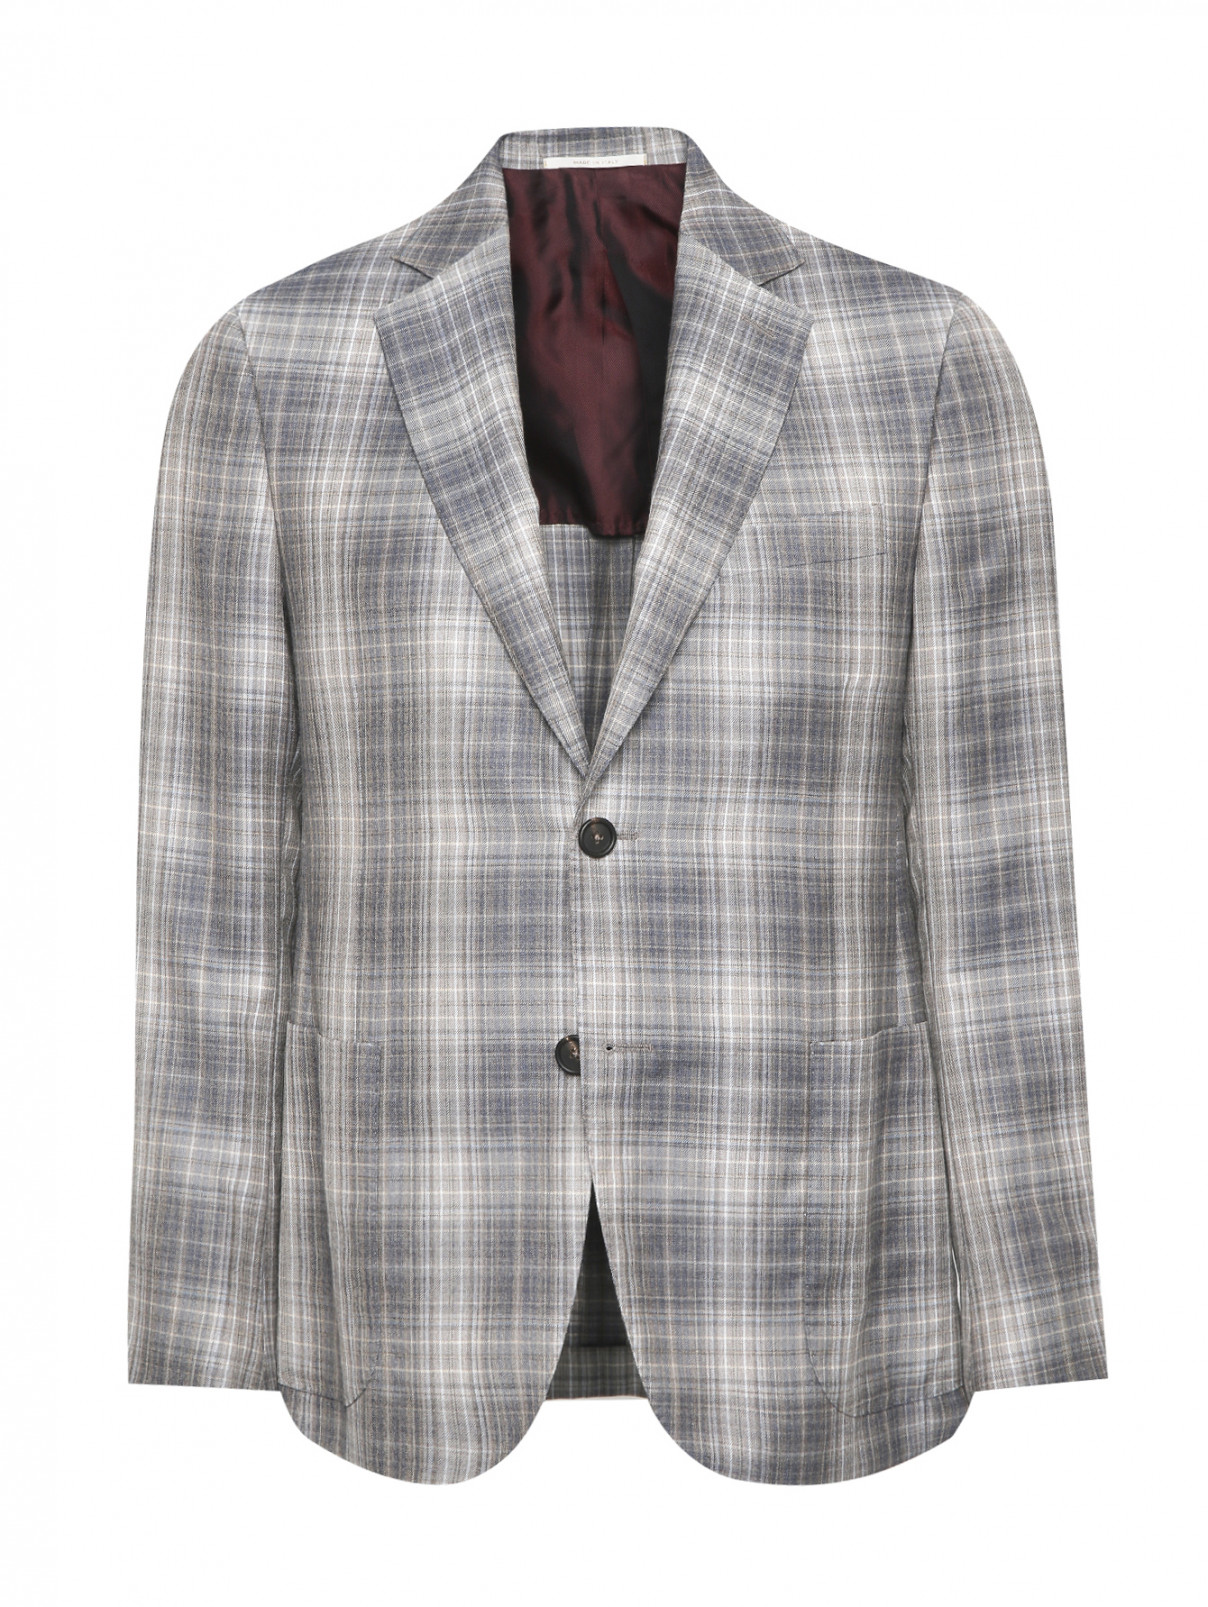 Пиджак однобортный из шерсти с узором "клетка" Pal Zileri  –  Общий вид  – Цвет:  Серый